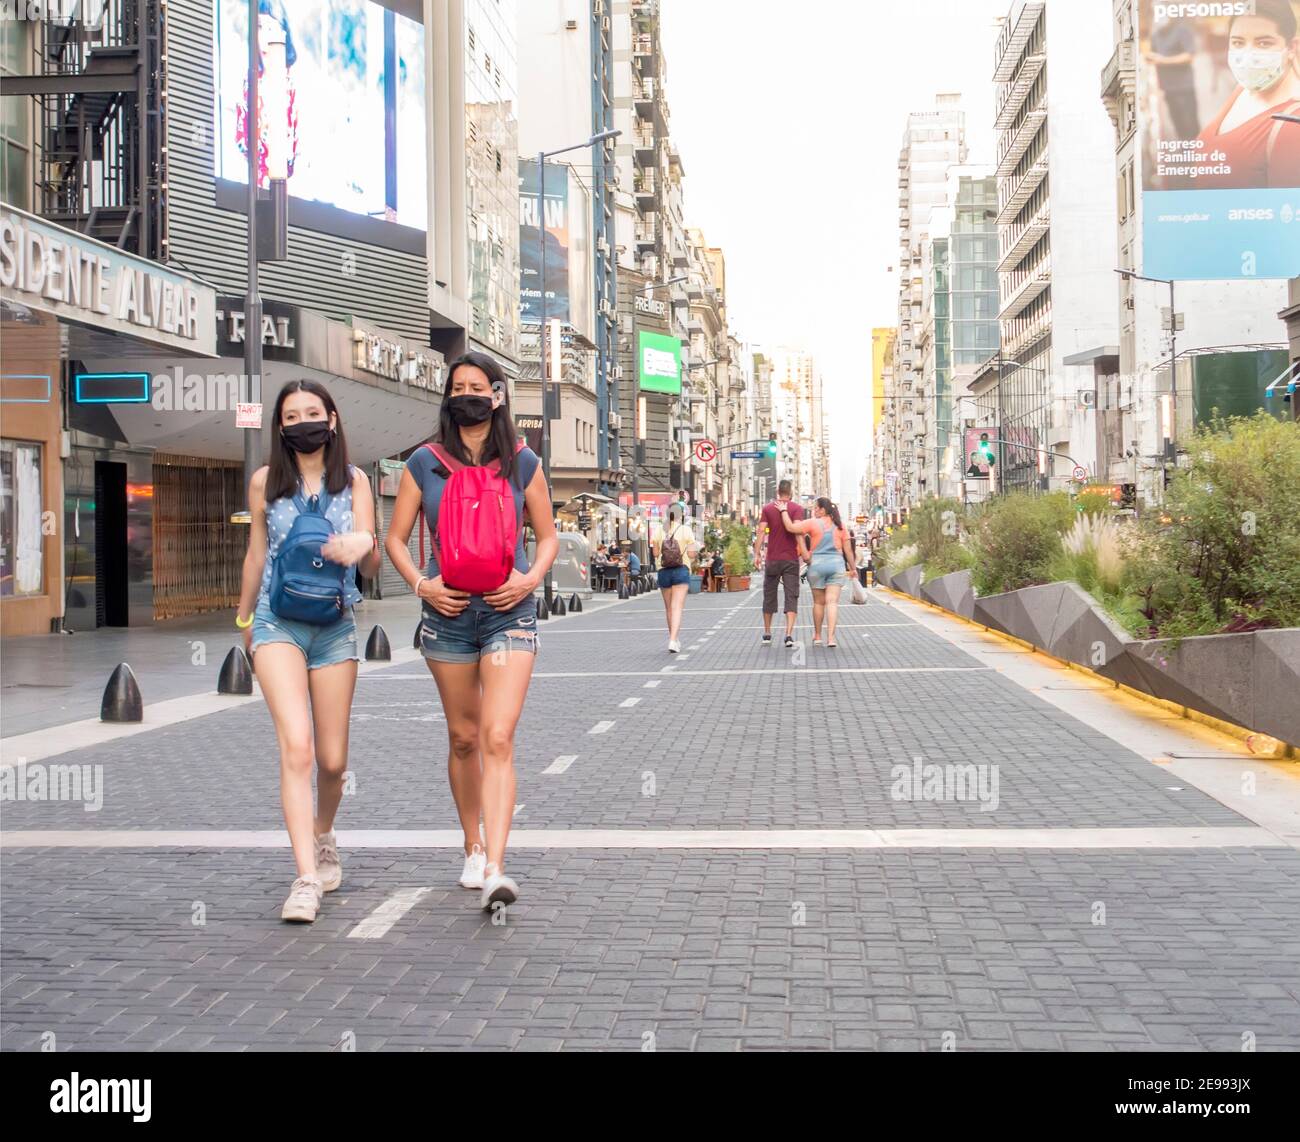 Personas que usan máscaras durante la pandemia de Covid 19 caminan por la Avenida Corrientes, Buenos Aires, Argentina Foto de stock